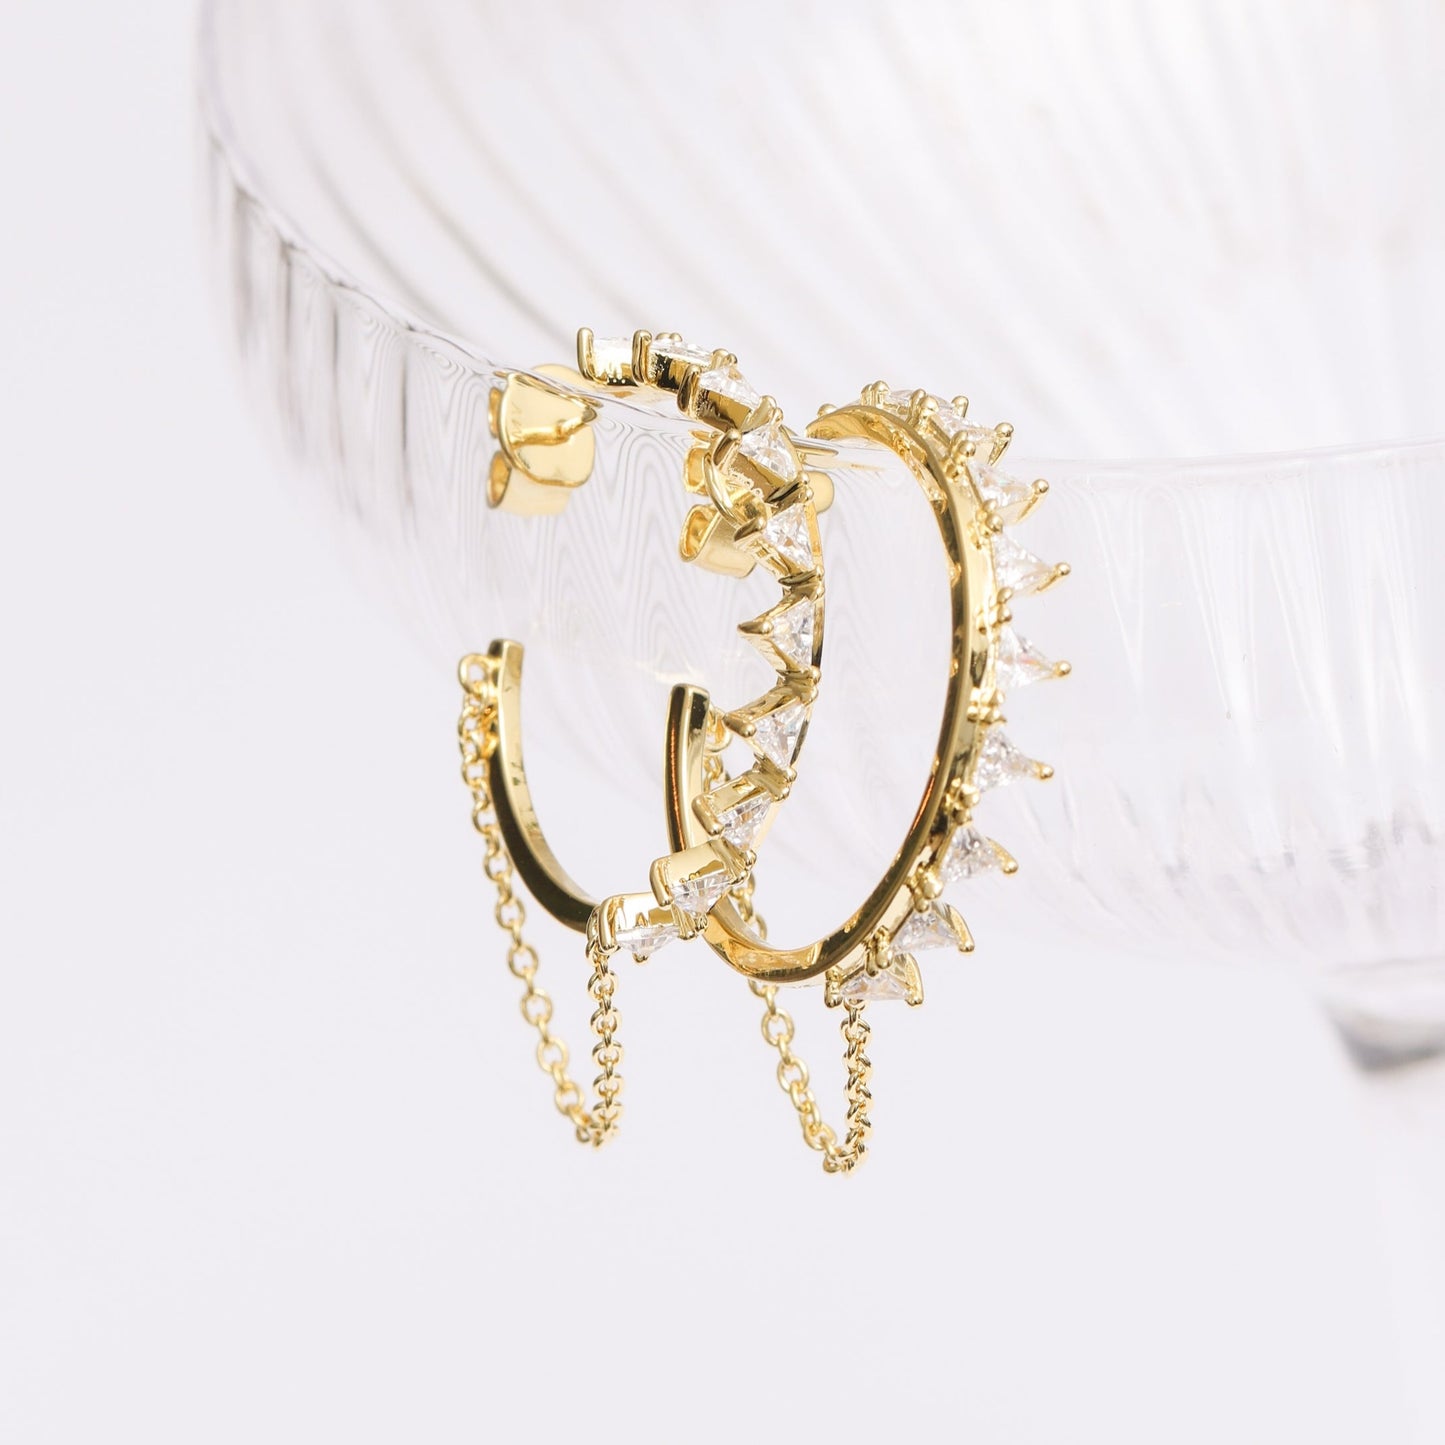 Sun loop earrings - gold plated